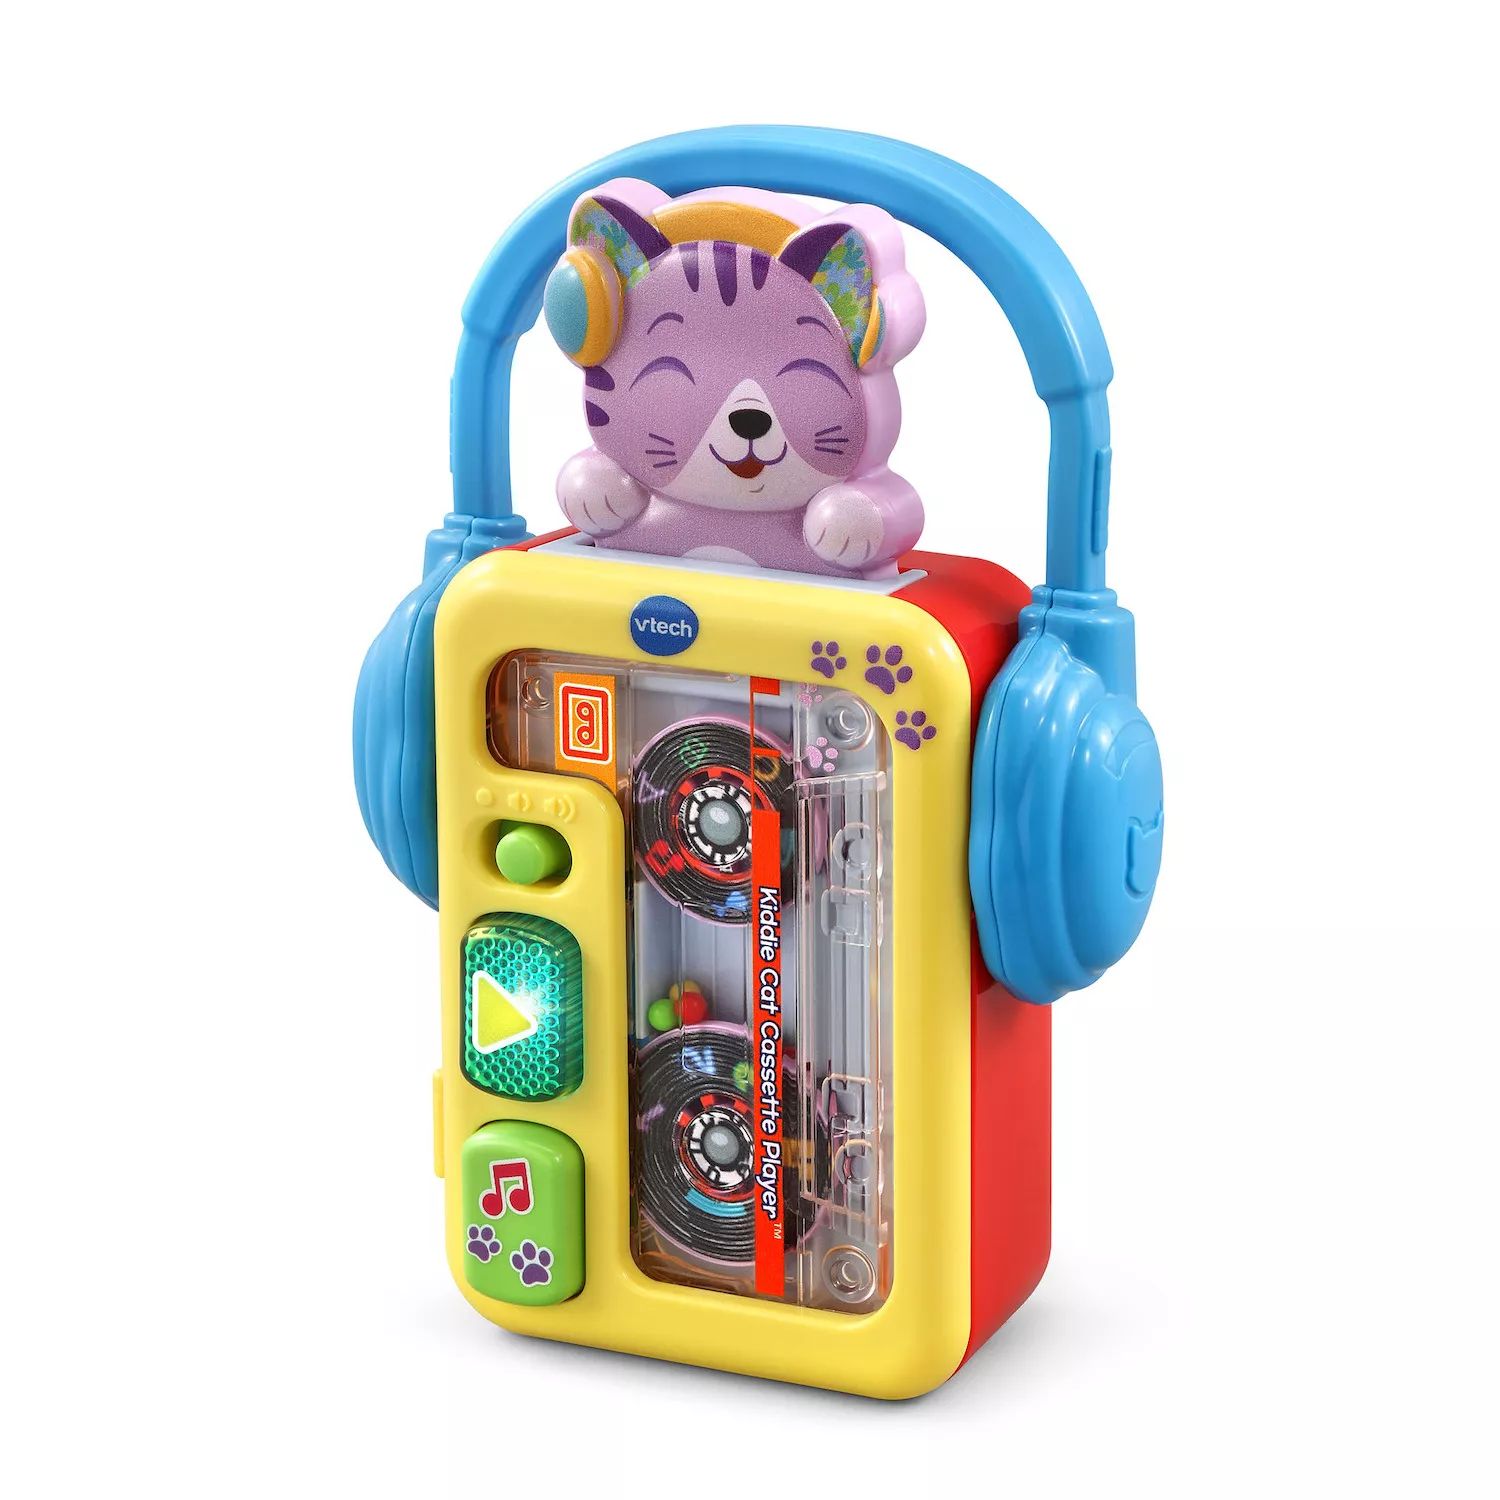 Игрушка-кассетный плеер VTech Kiddie Cat VTech цена и фото